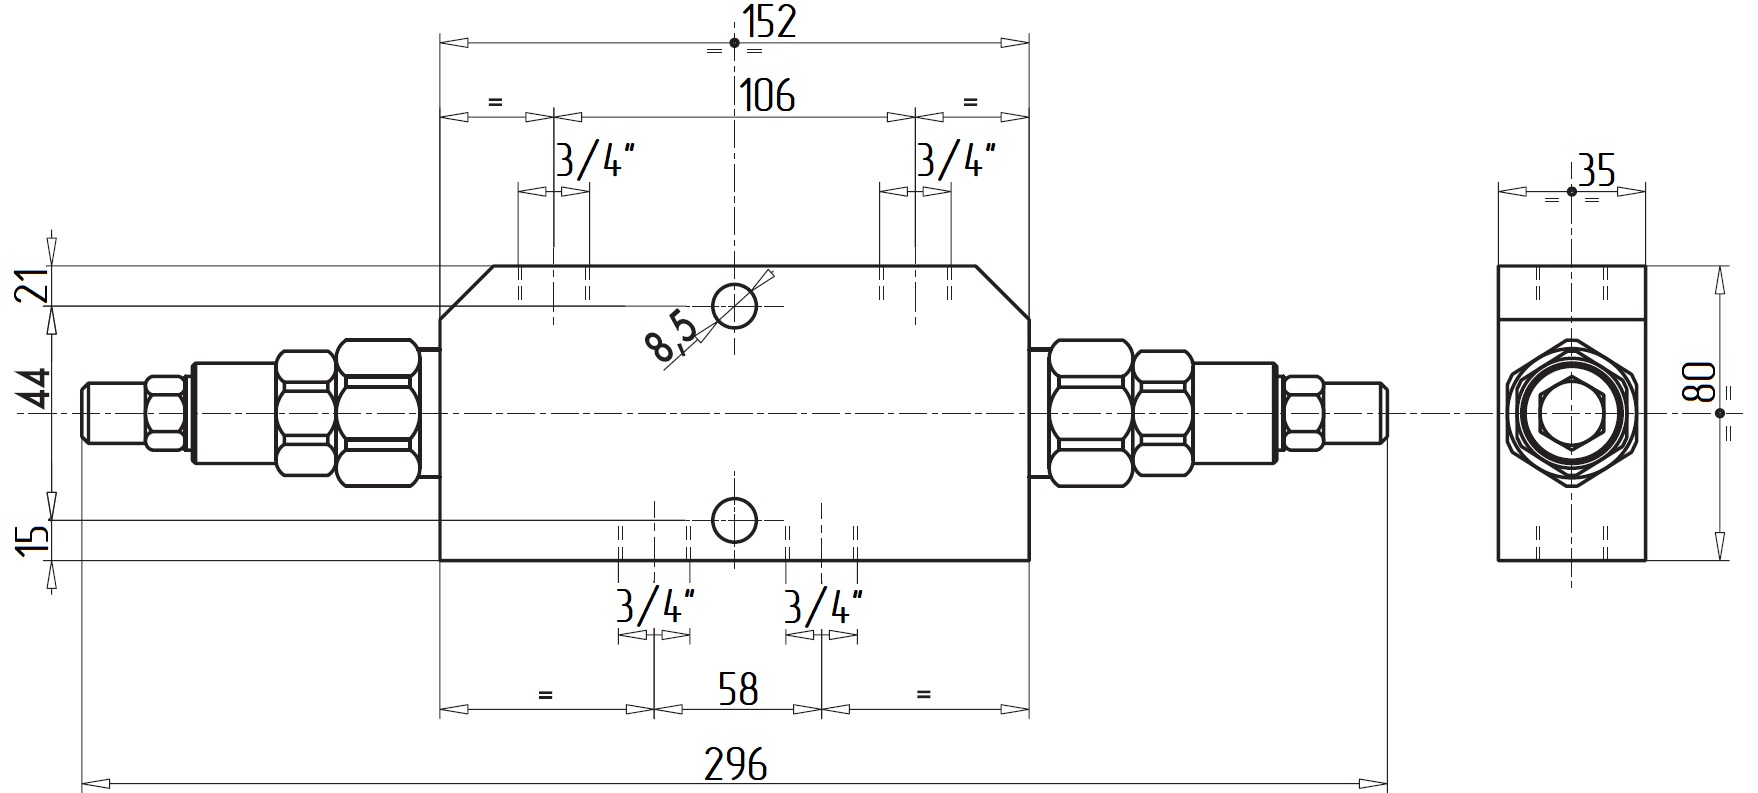 Габаритные размеры V0431-VBCD 3/4 DE Подпорно-тормозной клапан двусторонний